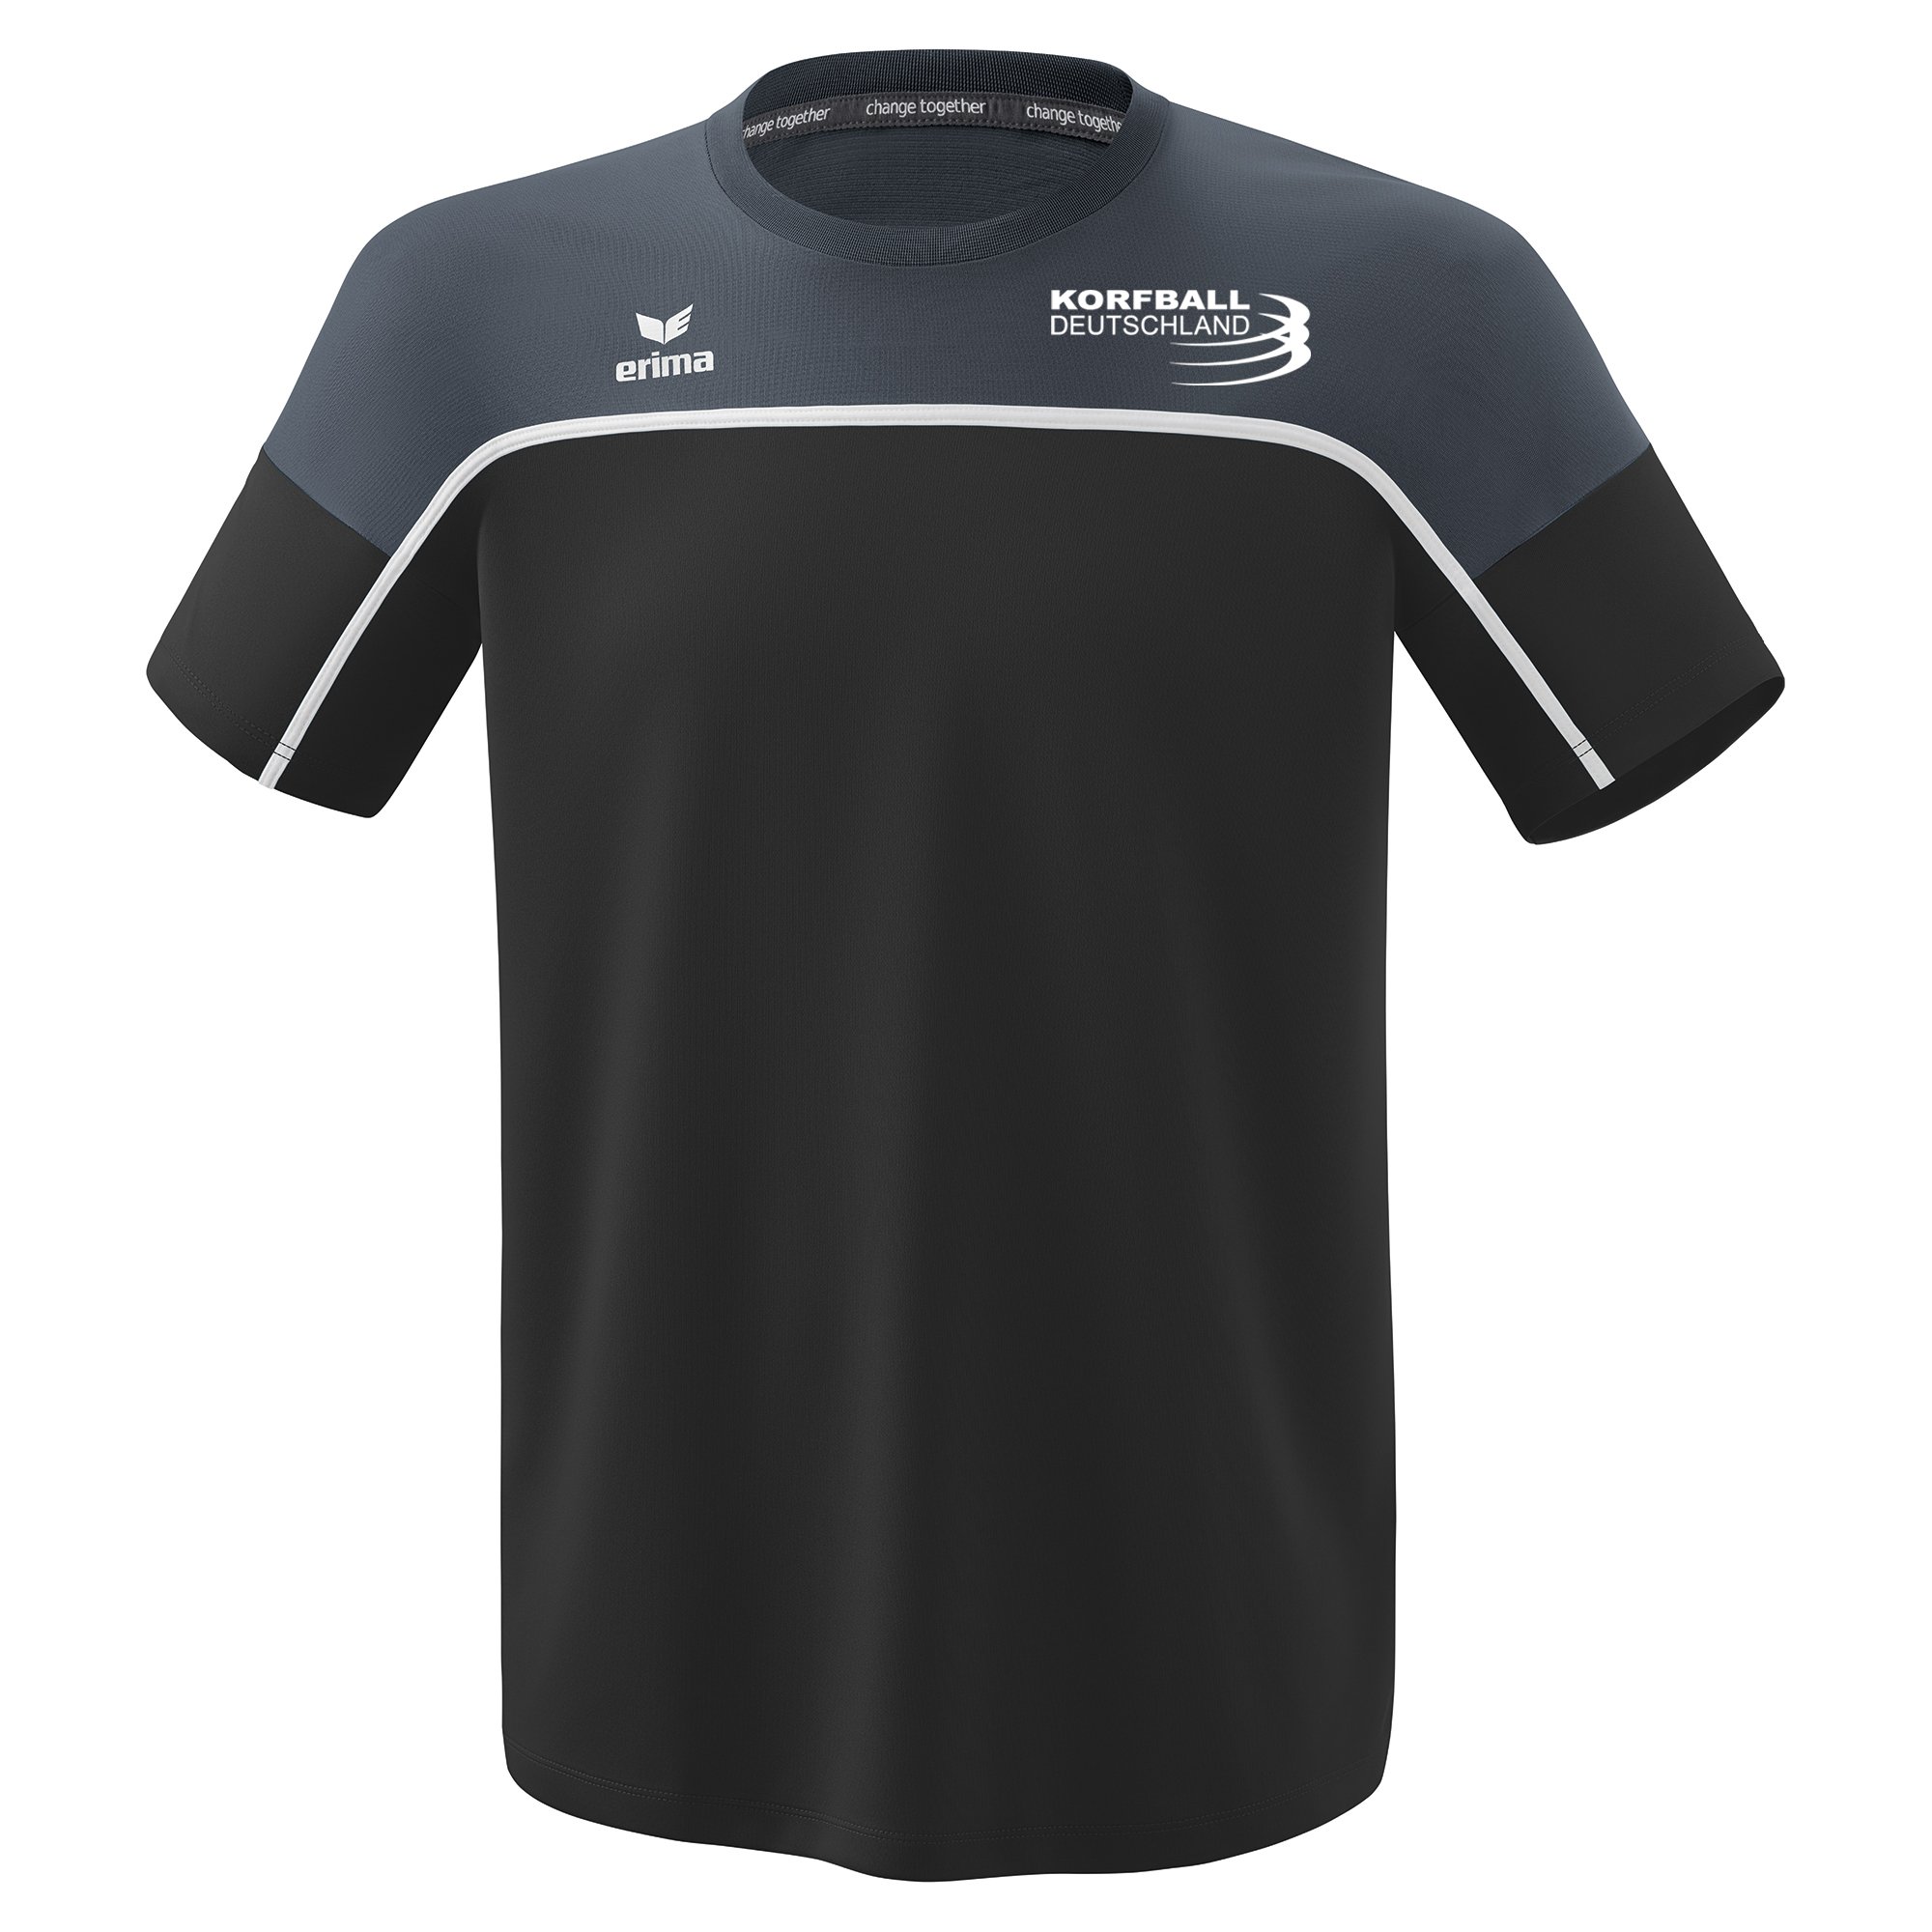 Korfball Deutschland T-Shirt